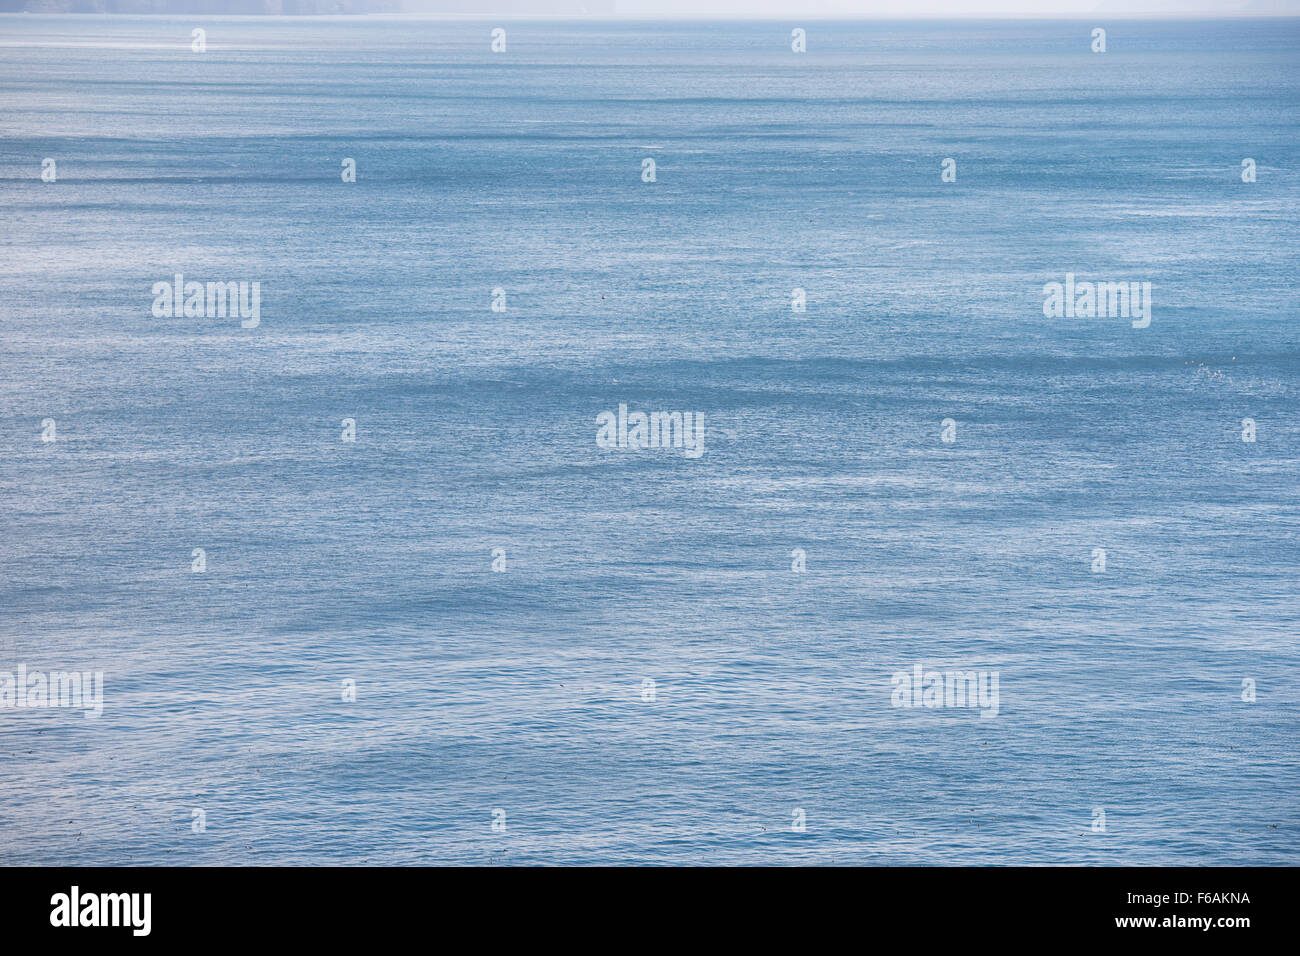 L'océan bleu avec en toile de fond de l'eau d'un bleu profond et le vent Banque D'Images